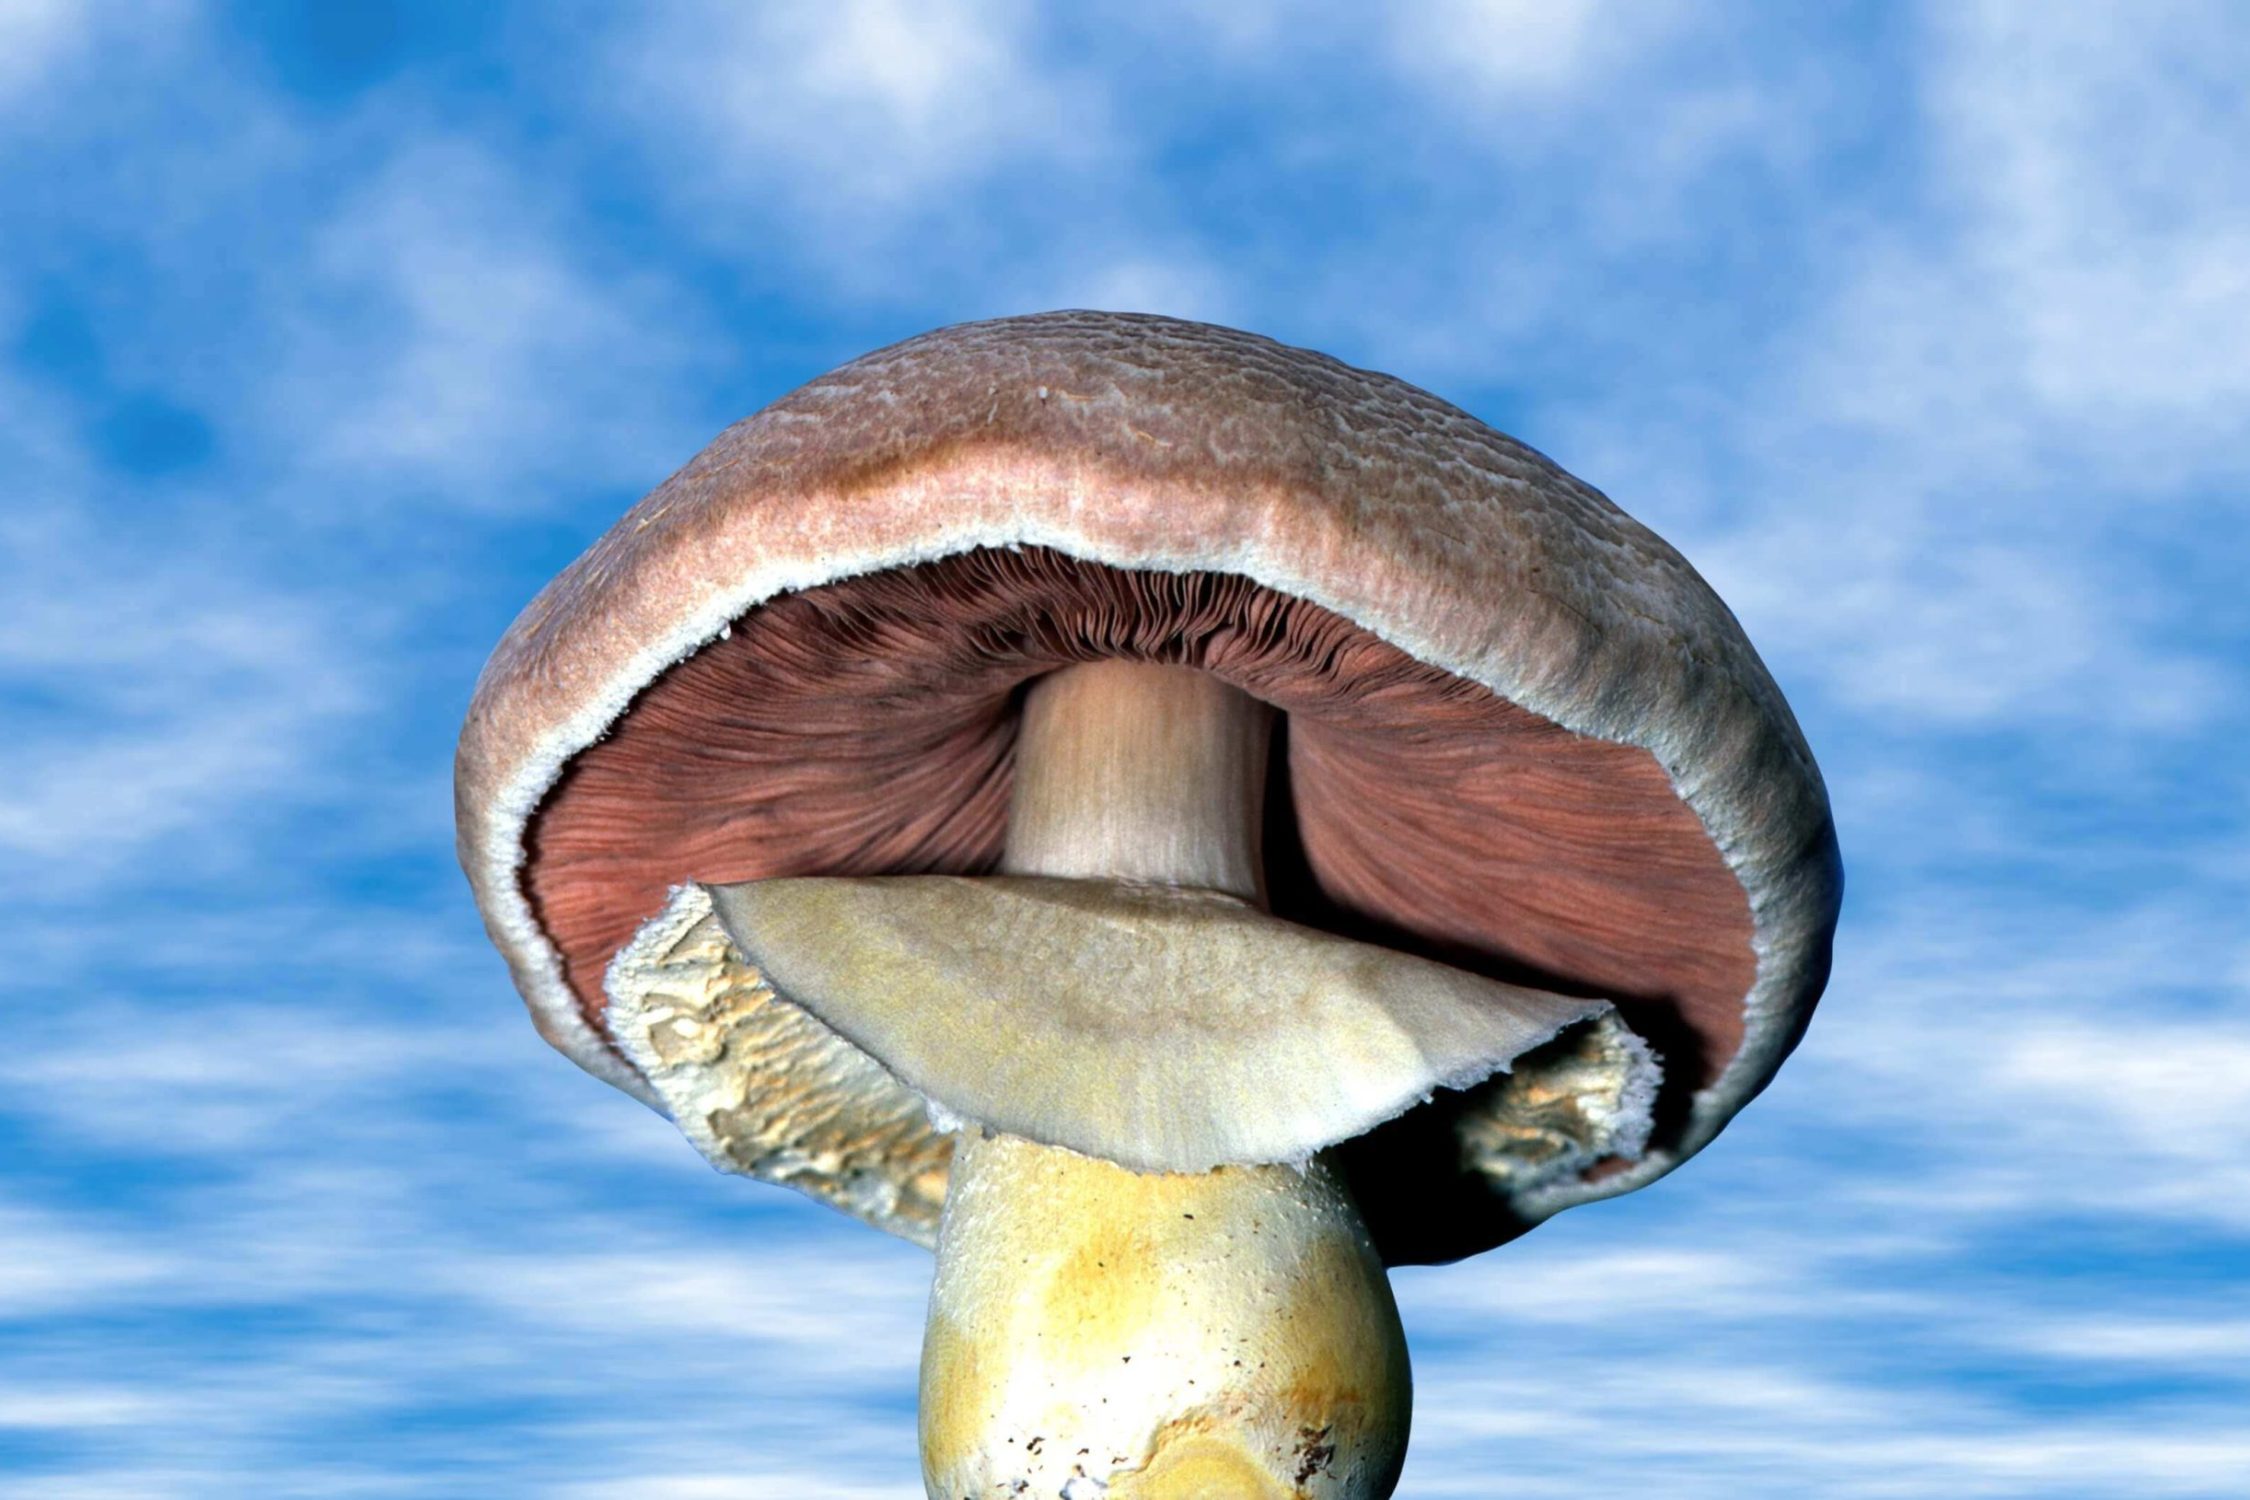 Semaine tastemaker Paul Stamets image mushroom